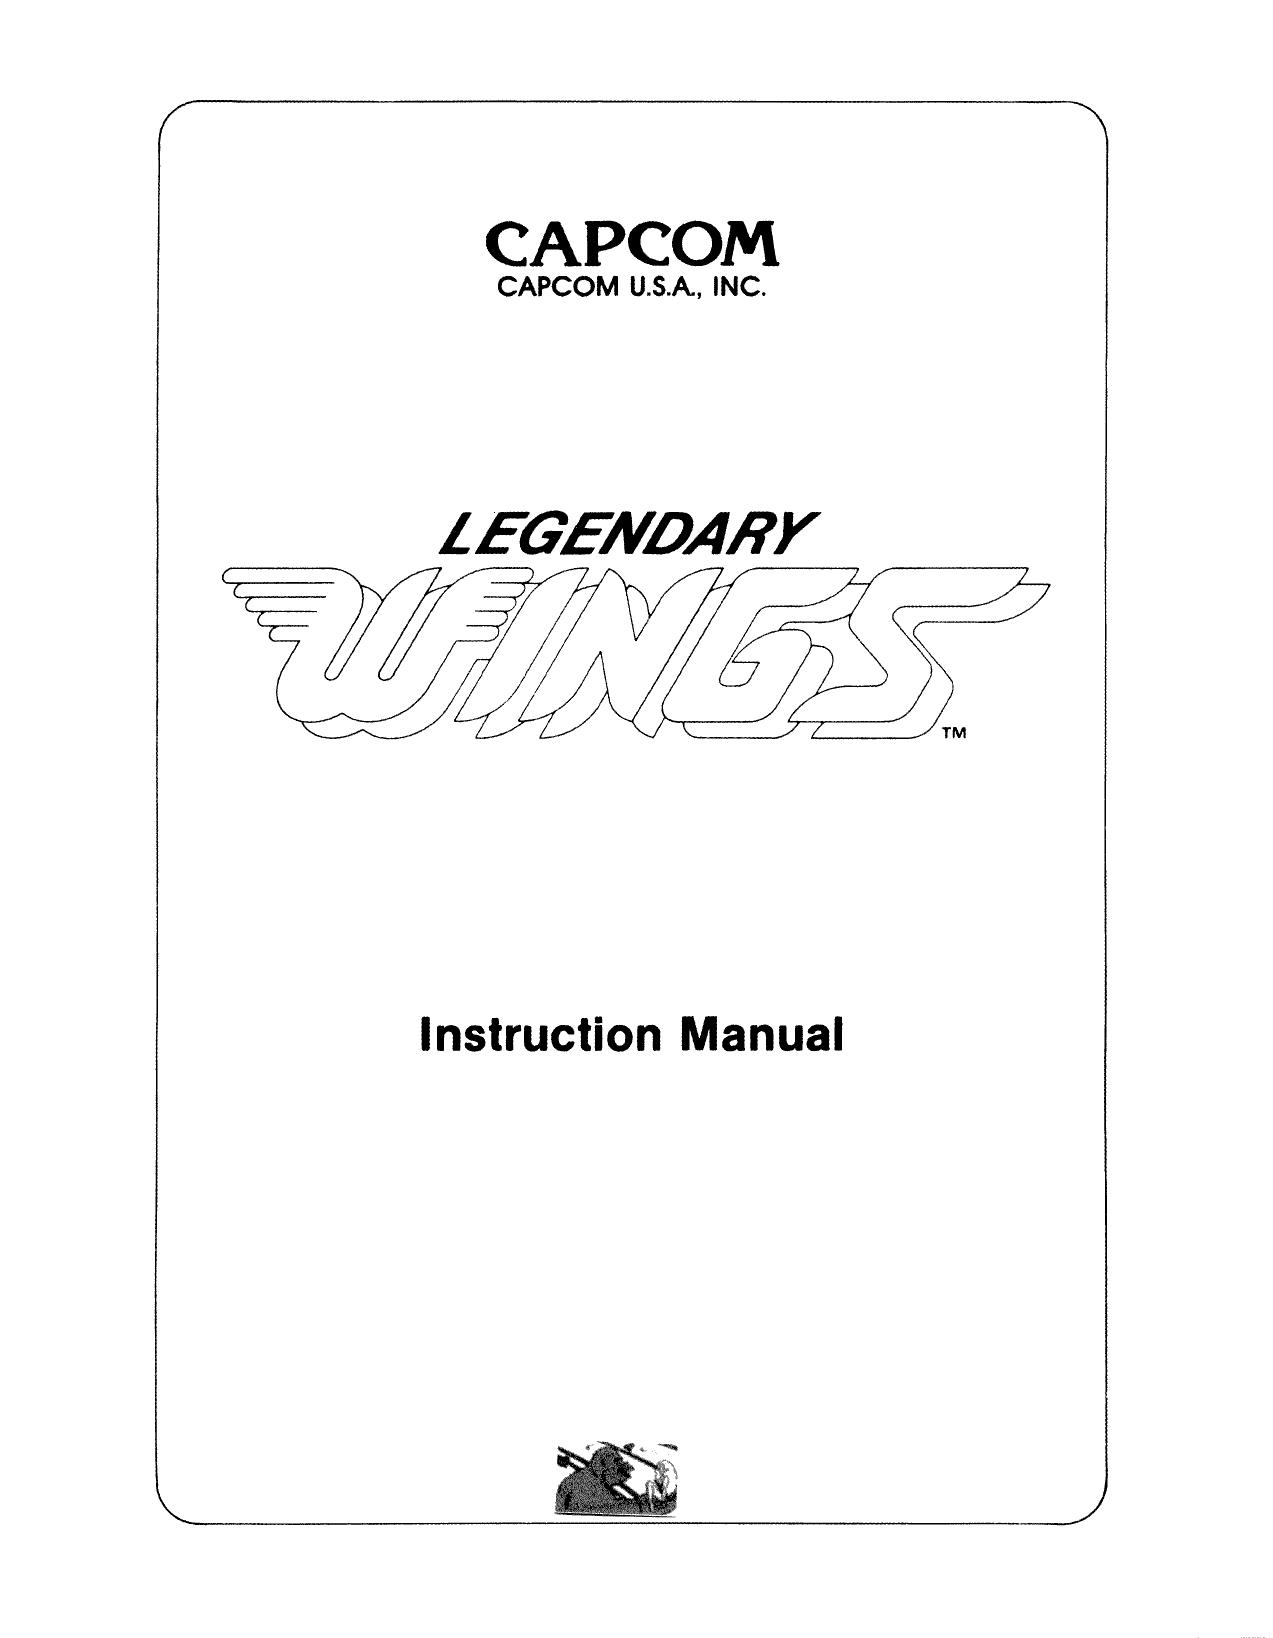 LegendaryWings Manual